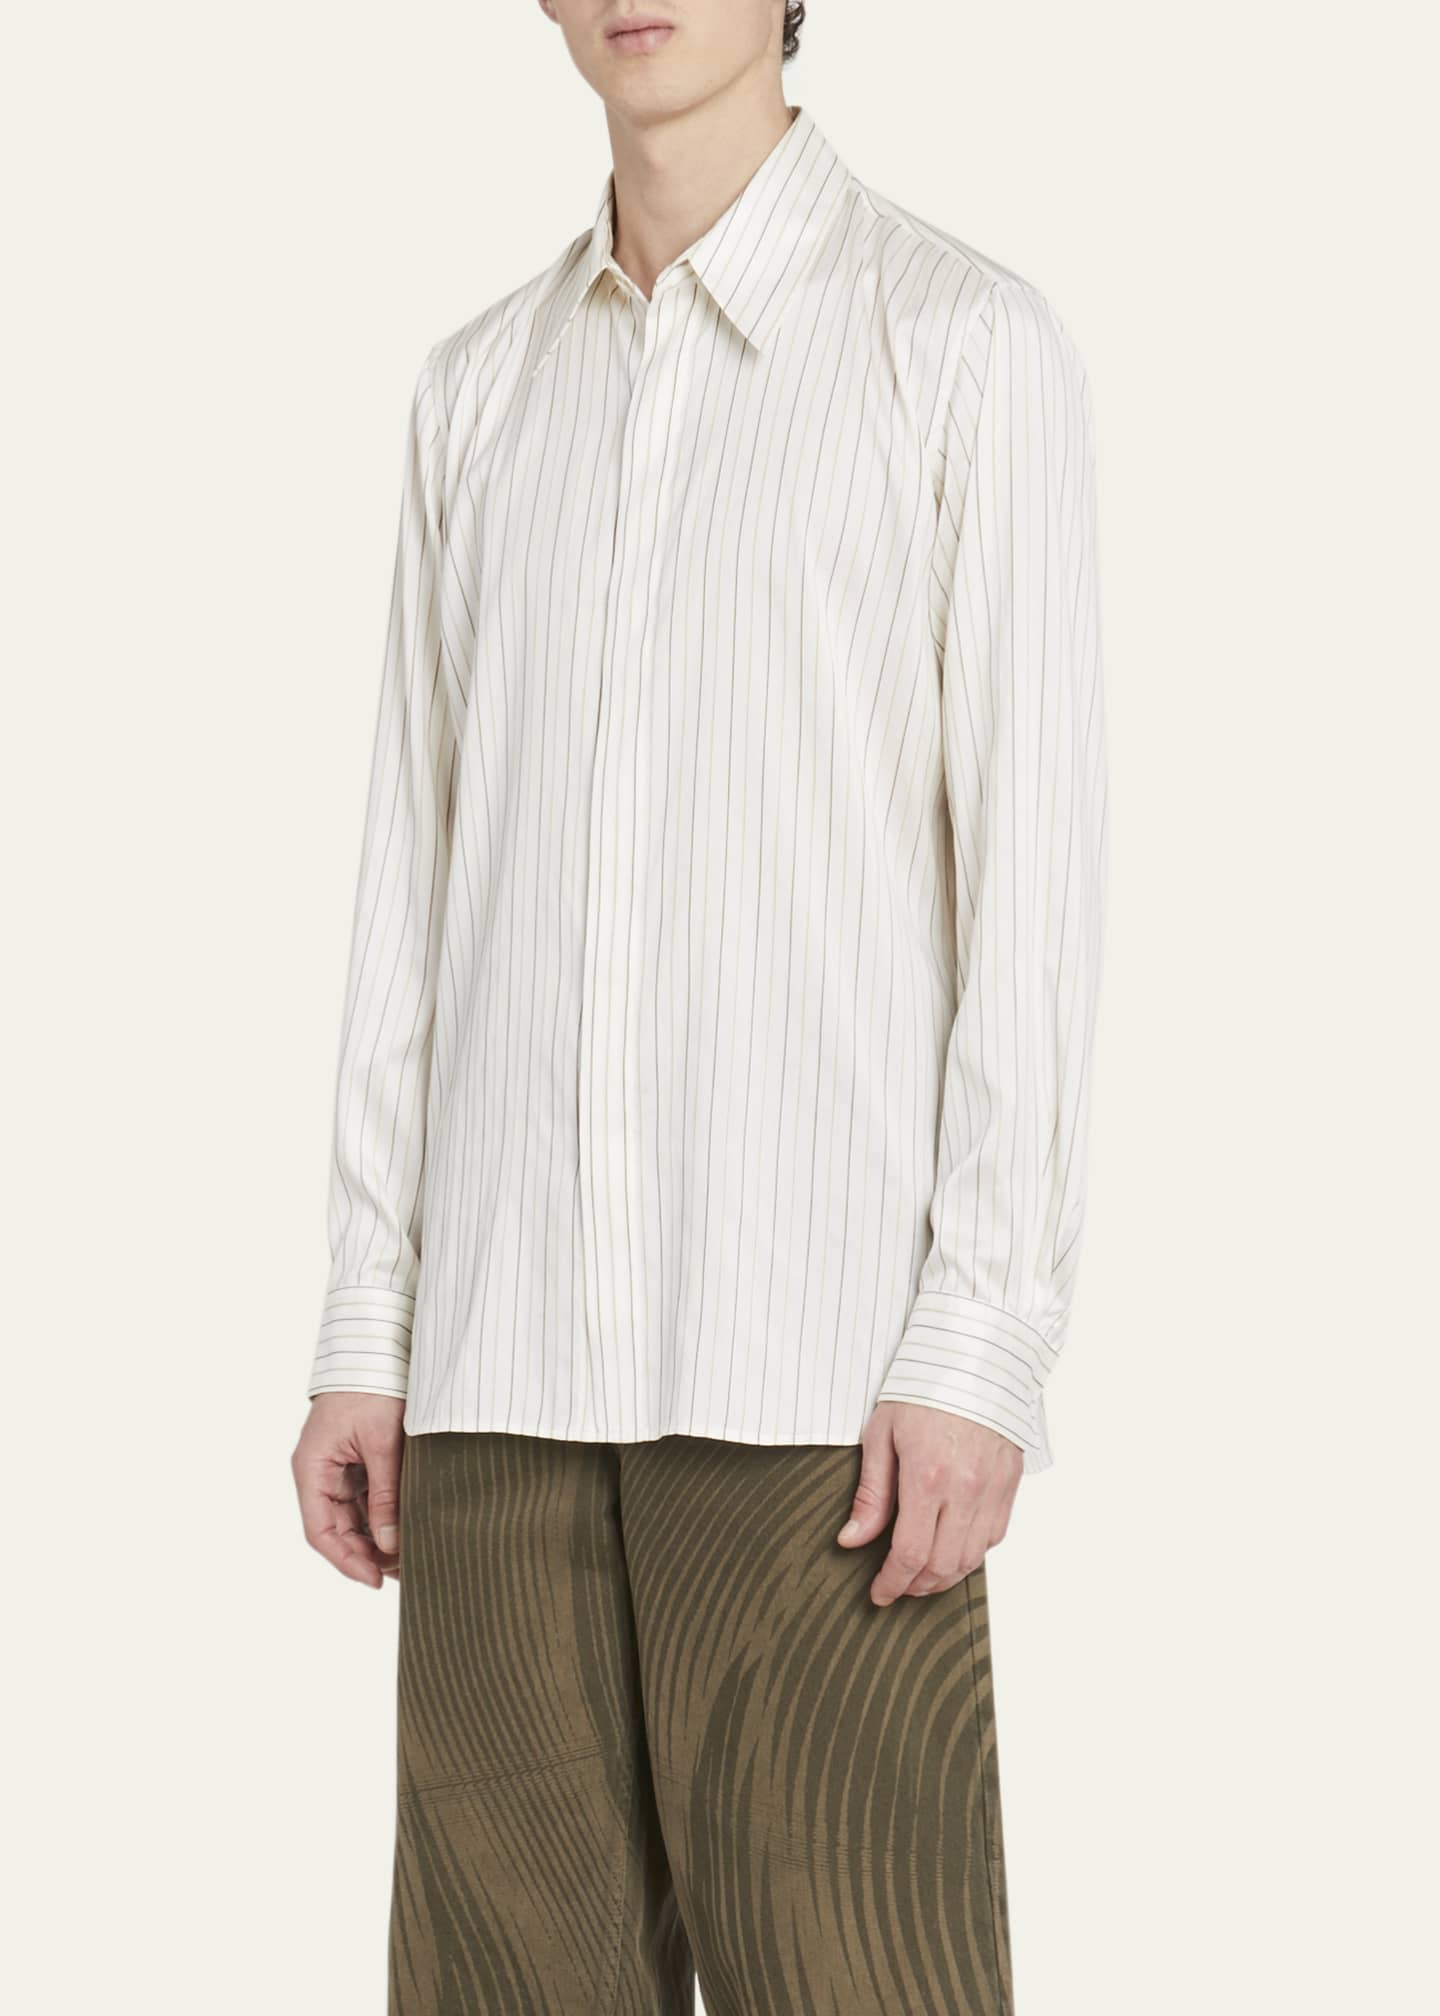 Dries Van Noten Men's Carvie Striped Dress Shirt - Bergdorf Goodman